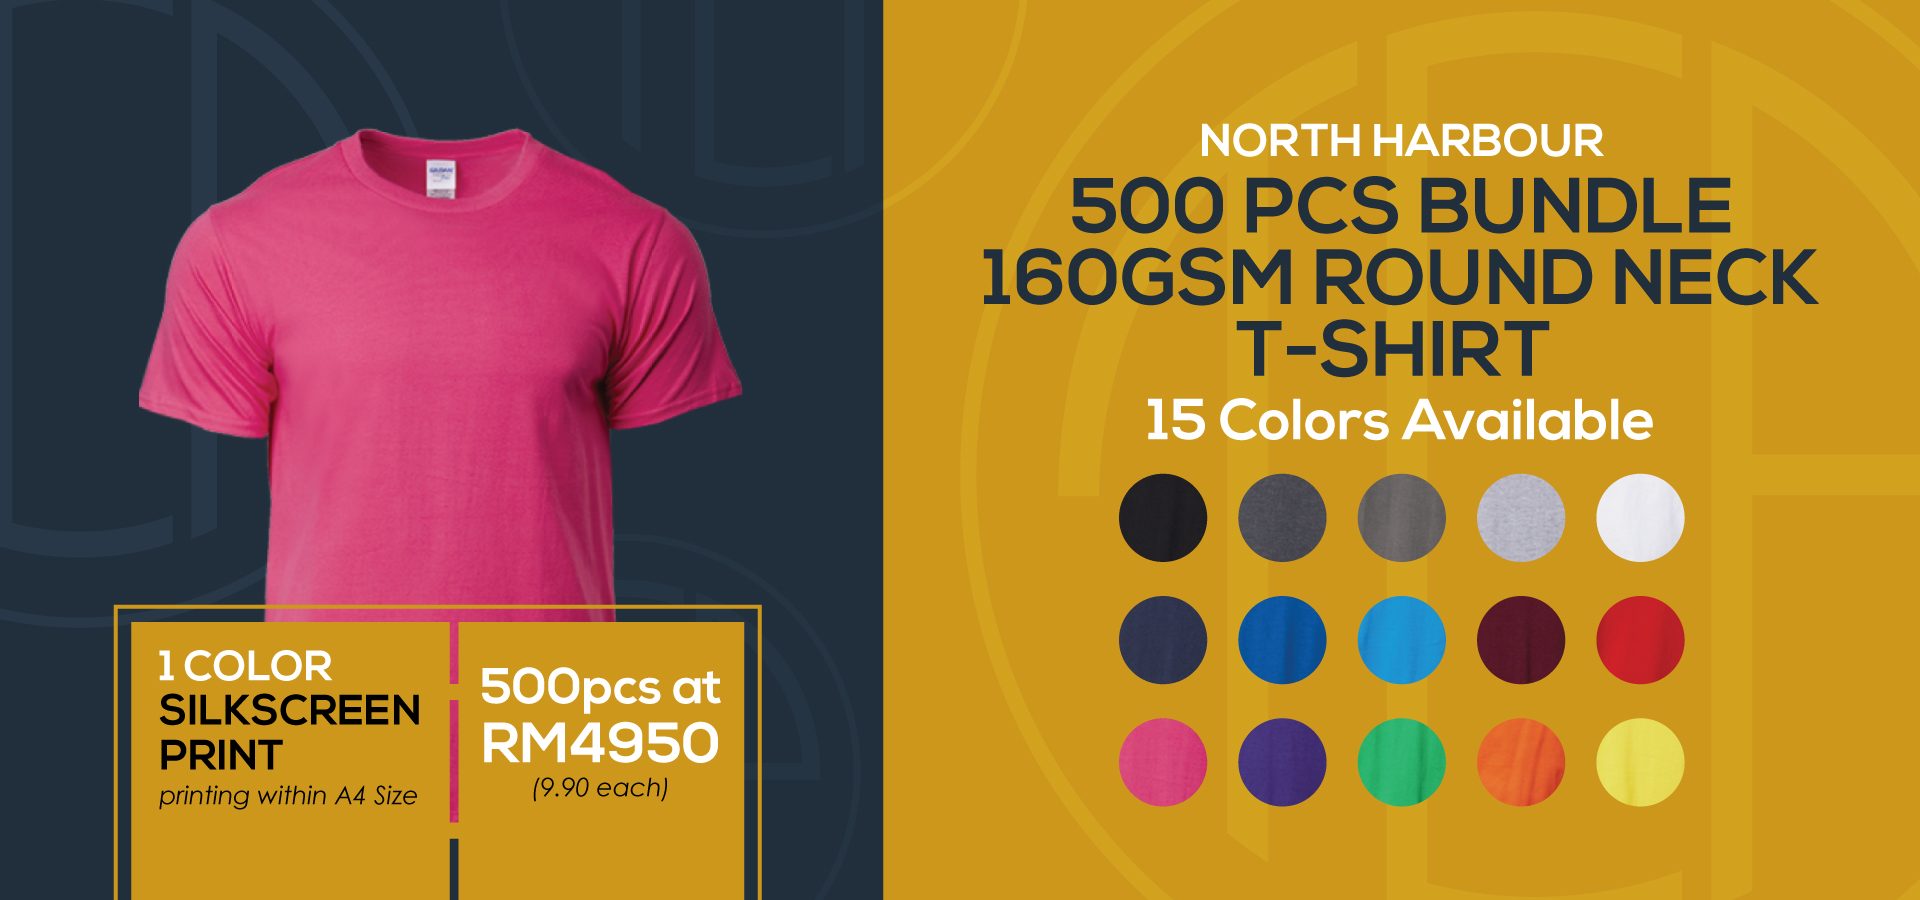 Promotion-Page-Silkscreen-Print-500PCS-North-Harbour-T-Shirt-Bundle